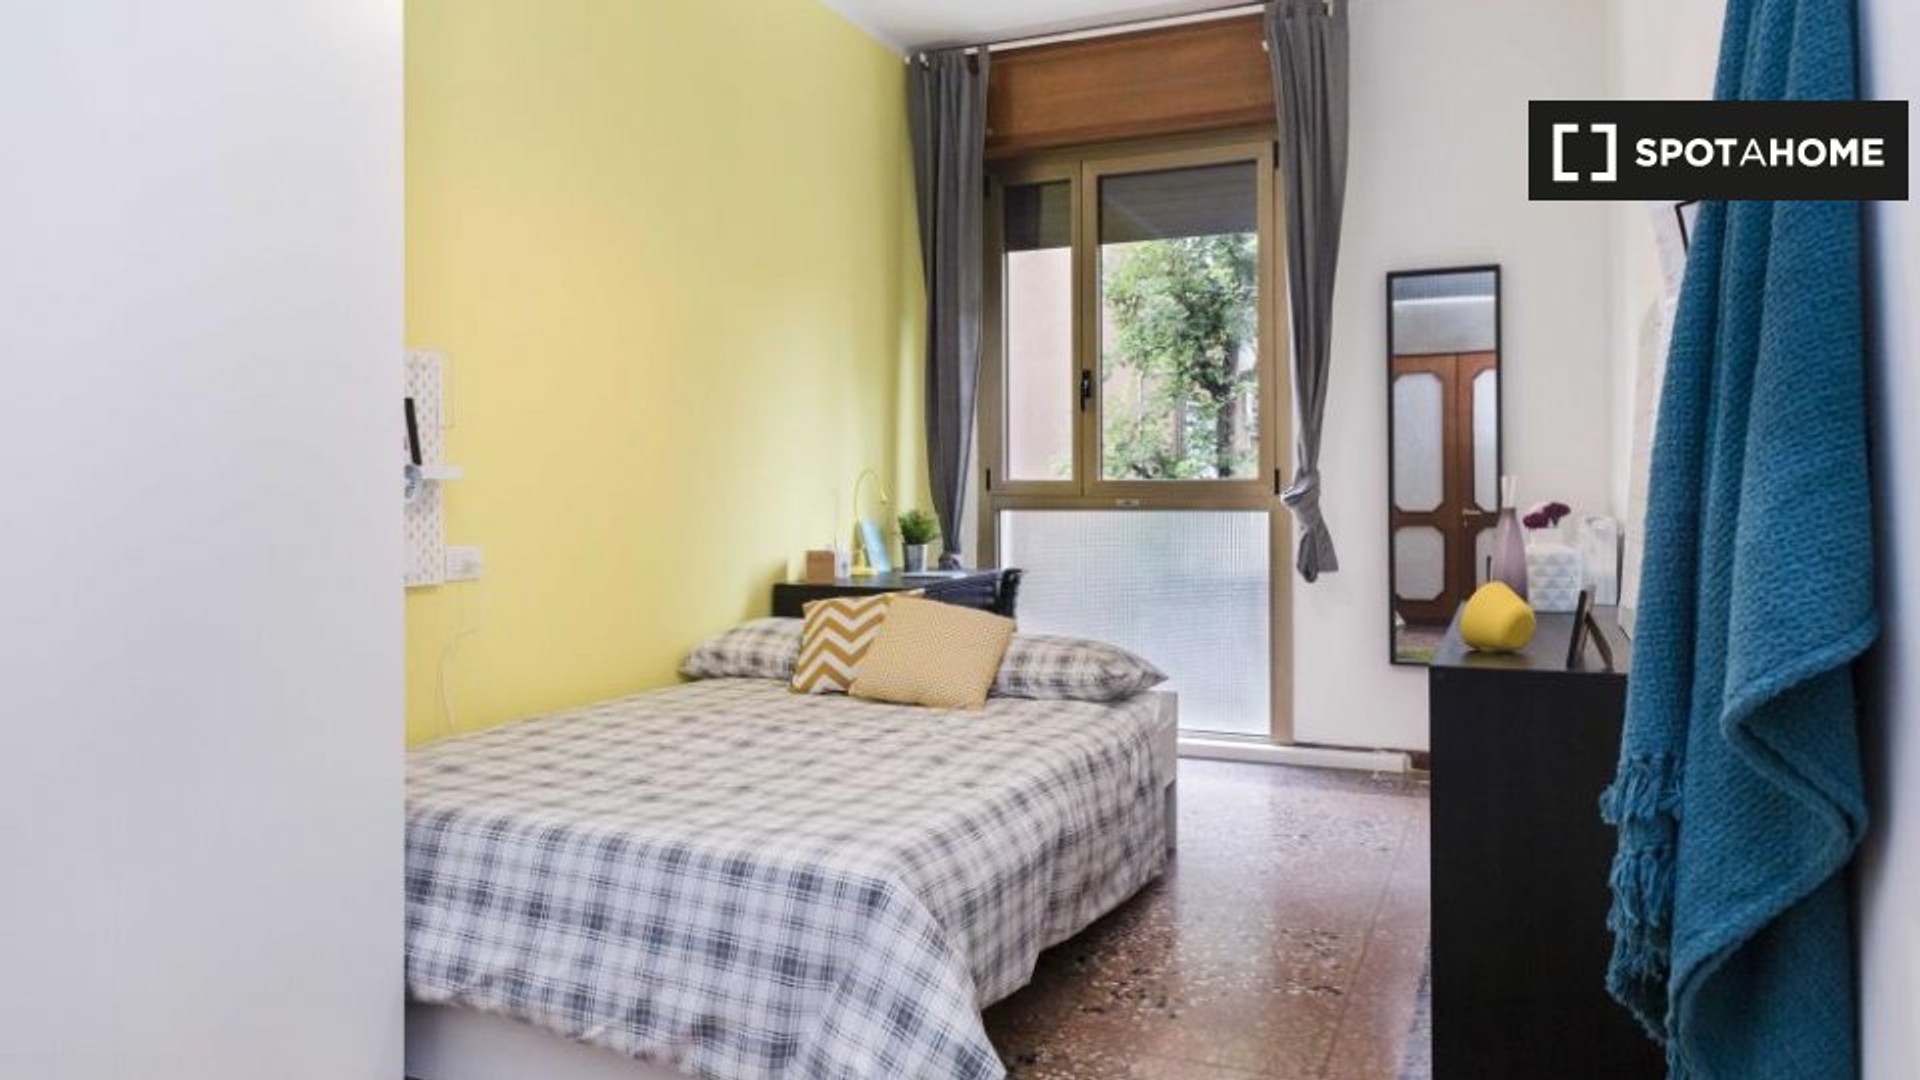 Alquiler de habitaciones por meses en Bolonia